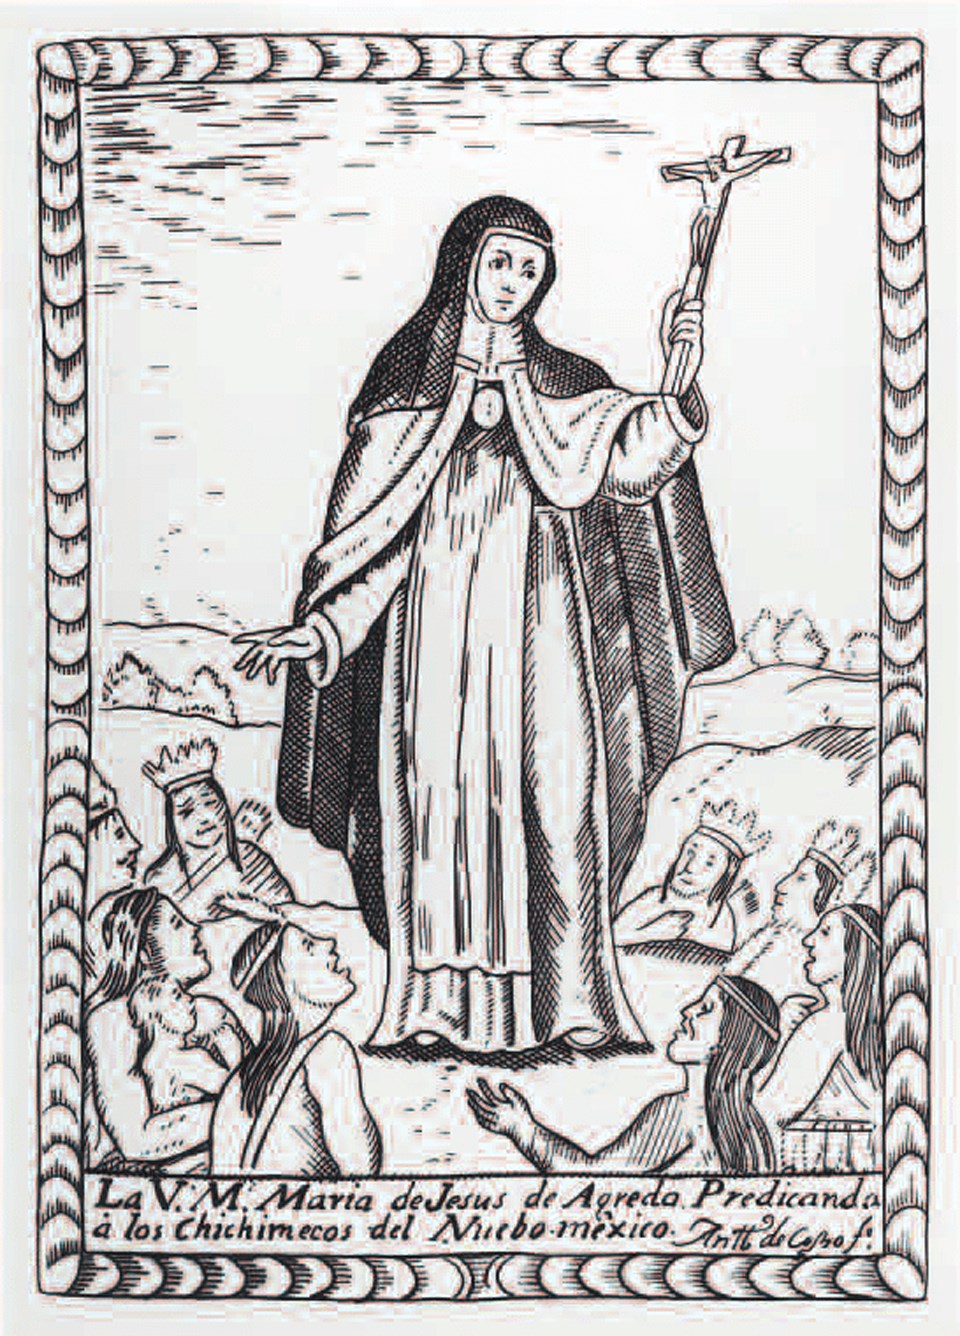 18th century lithograph of María de Jesús de Agreda preaching to indigenous peoples.